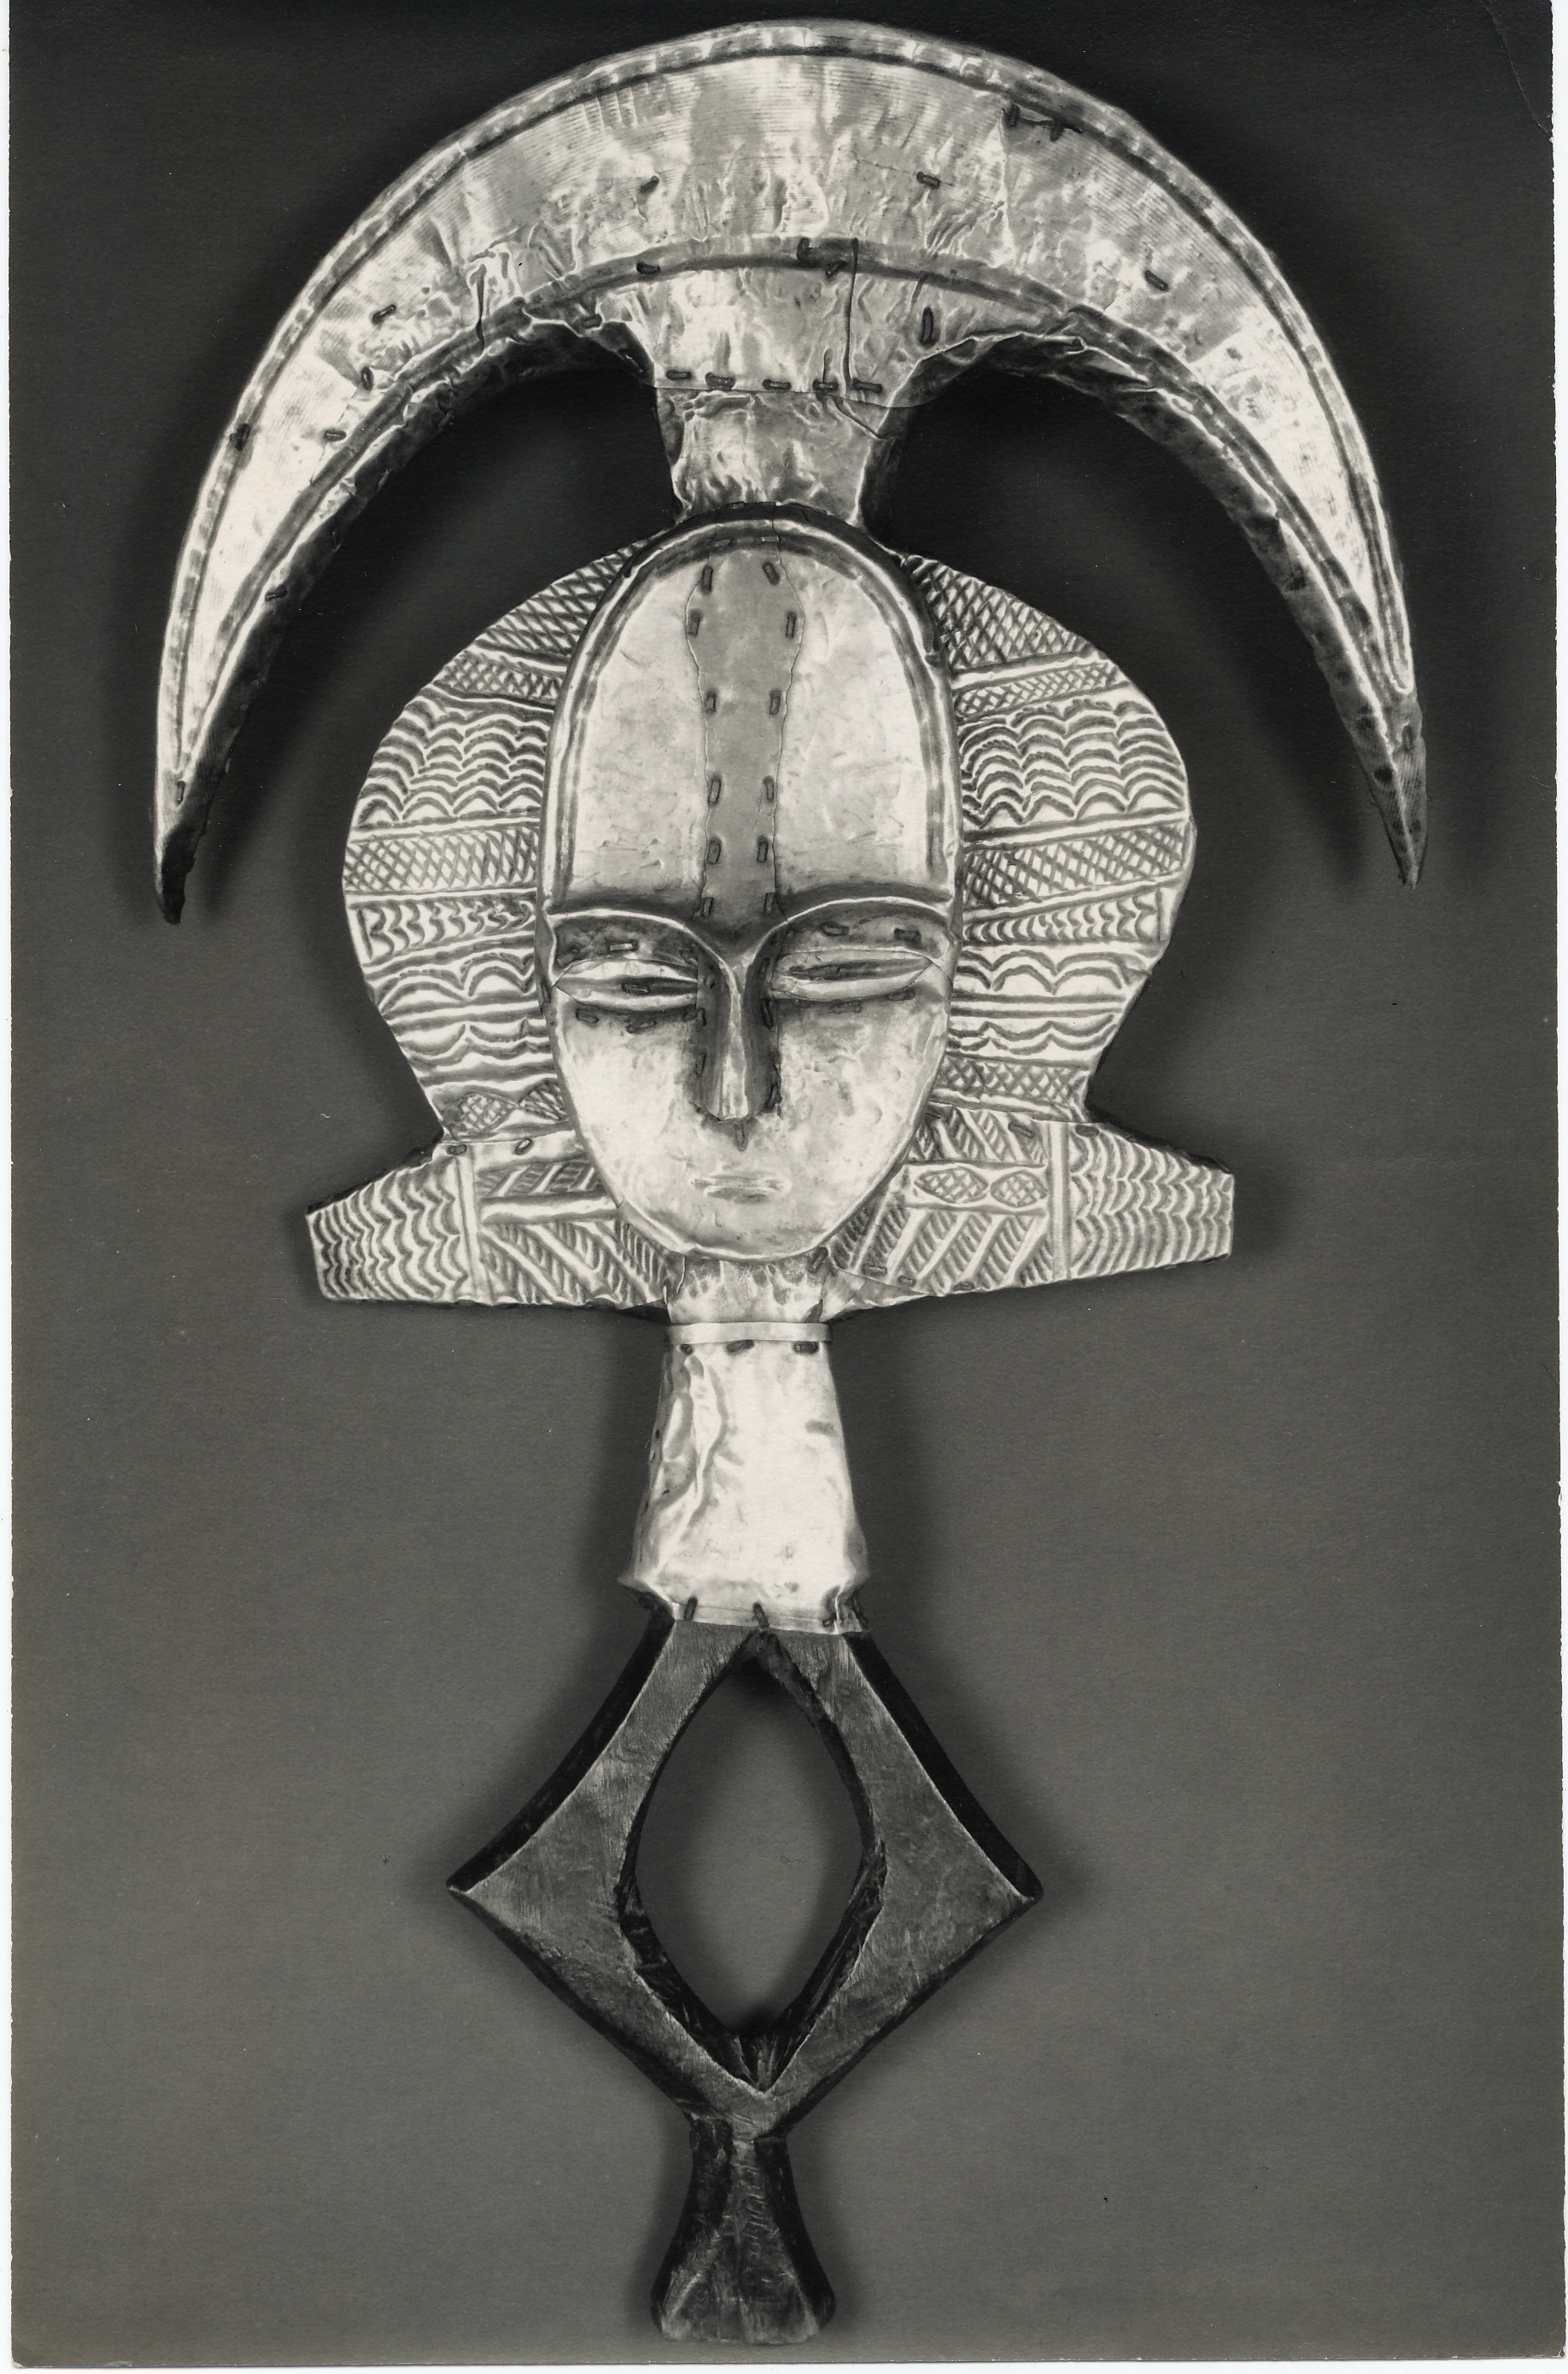 Walker Evans, Figure ancestrale, Gabon, 1935, Tirage argentique d'époque 23,5 x 15,2 cm
©DR